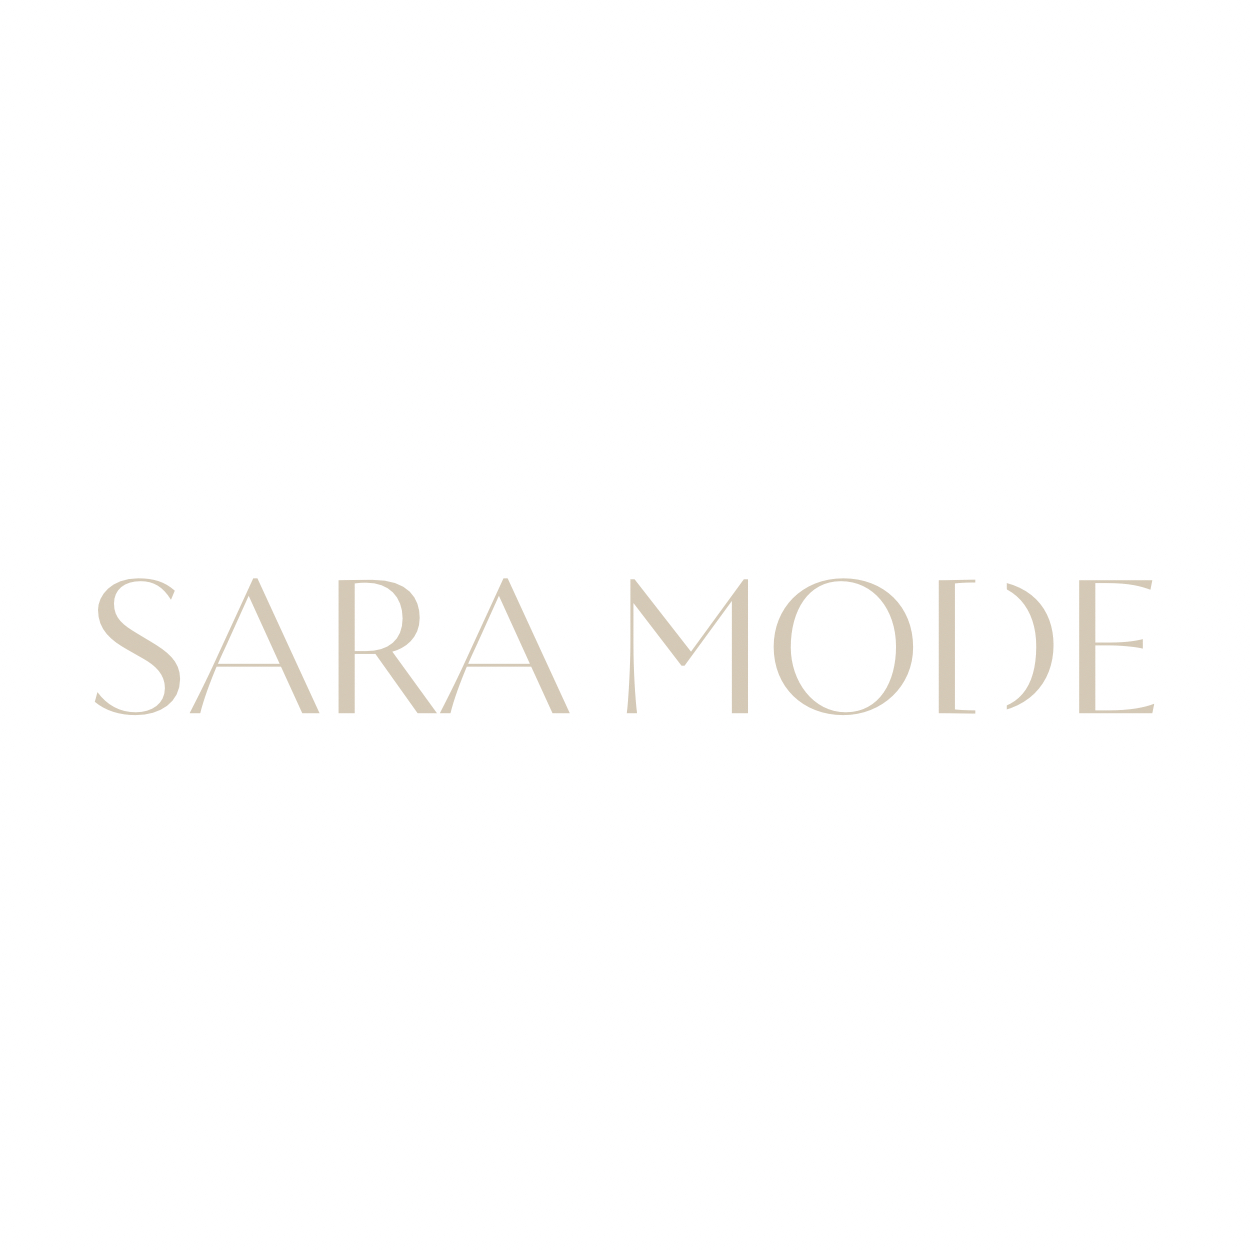 Sara Mode